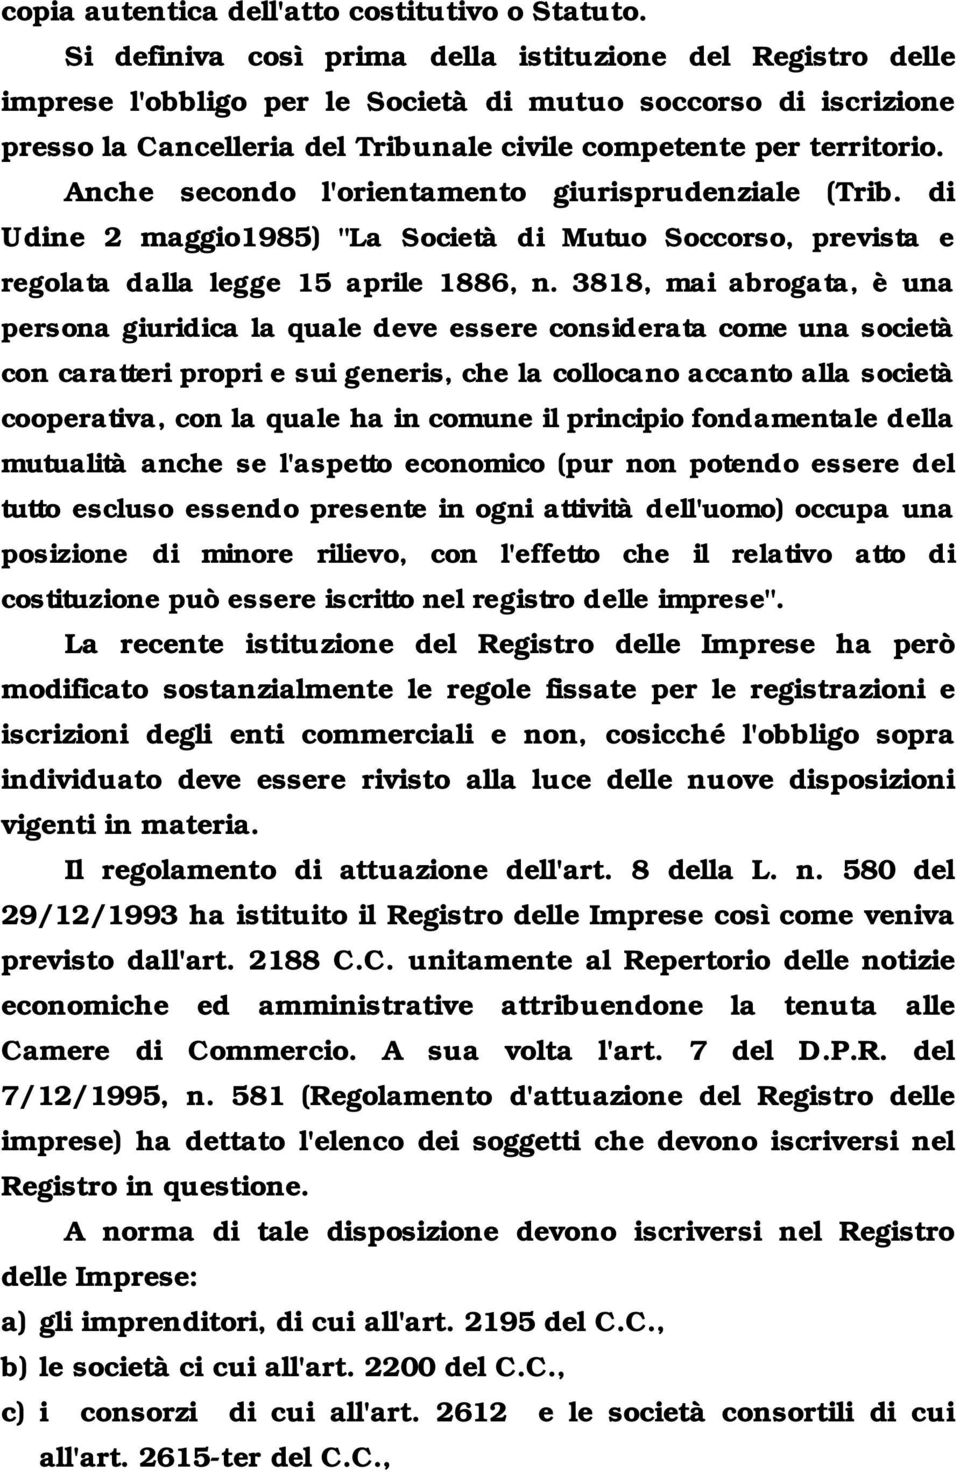 Anche secondo l'orientamento giurisprudenziale (Trib. di Udine 2 maggio1985) "La Società di Mutuo Soccorso, prevista e regolata dalla legge 15 aprile 1886, n.